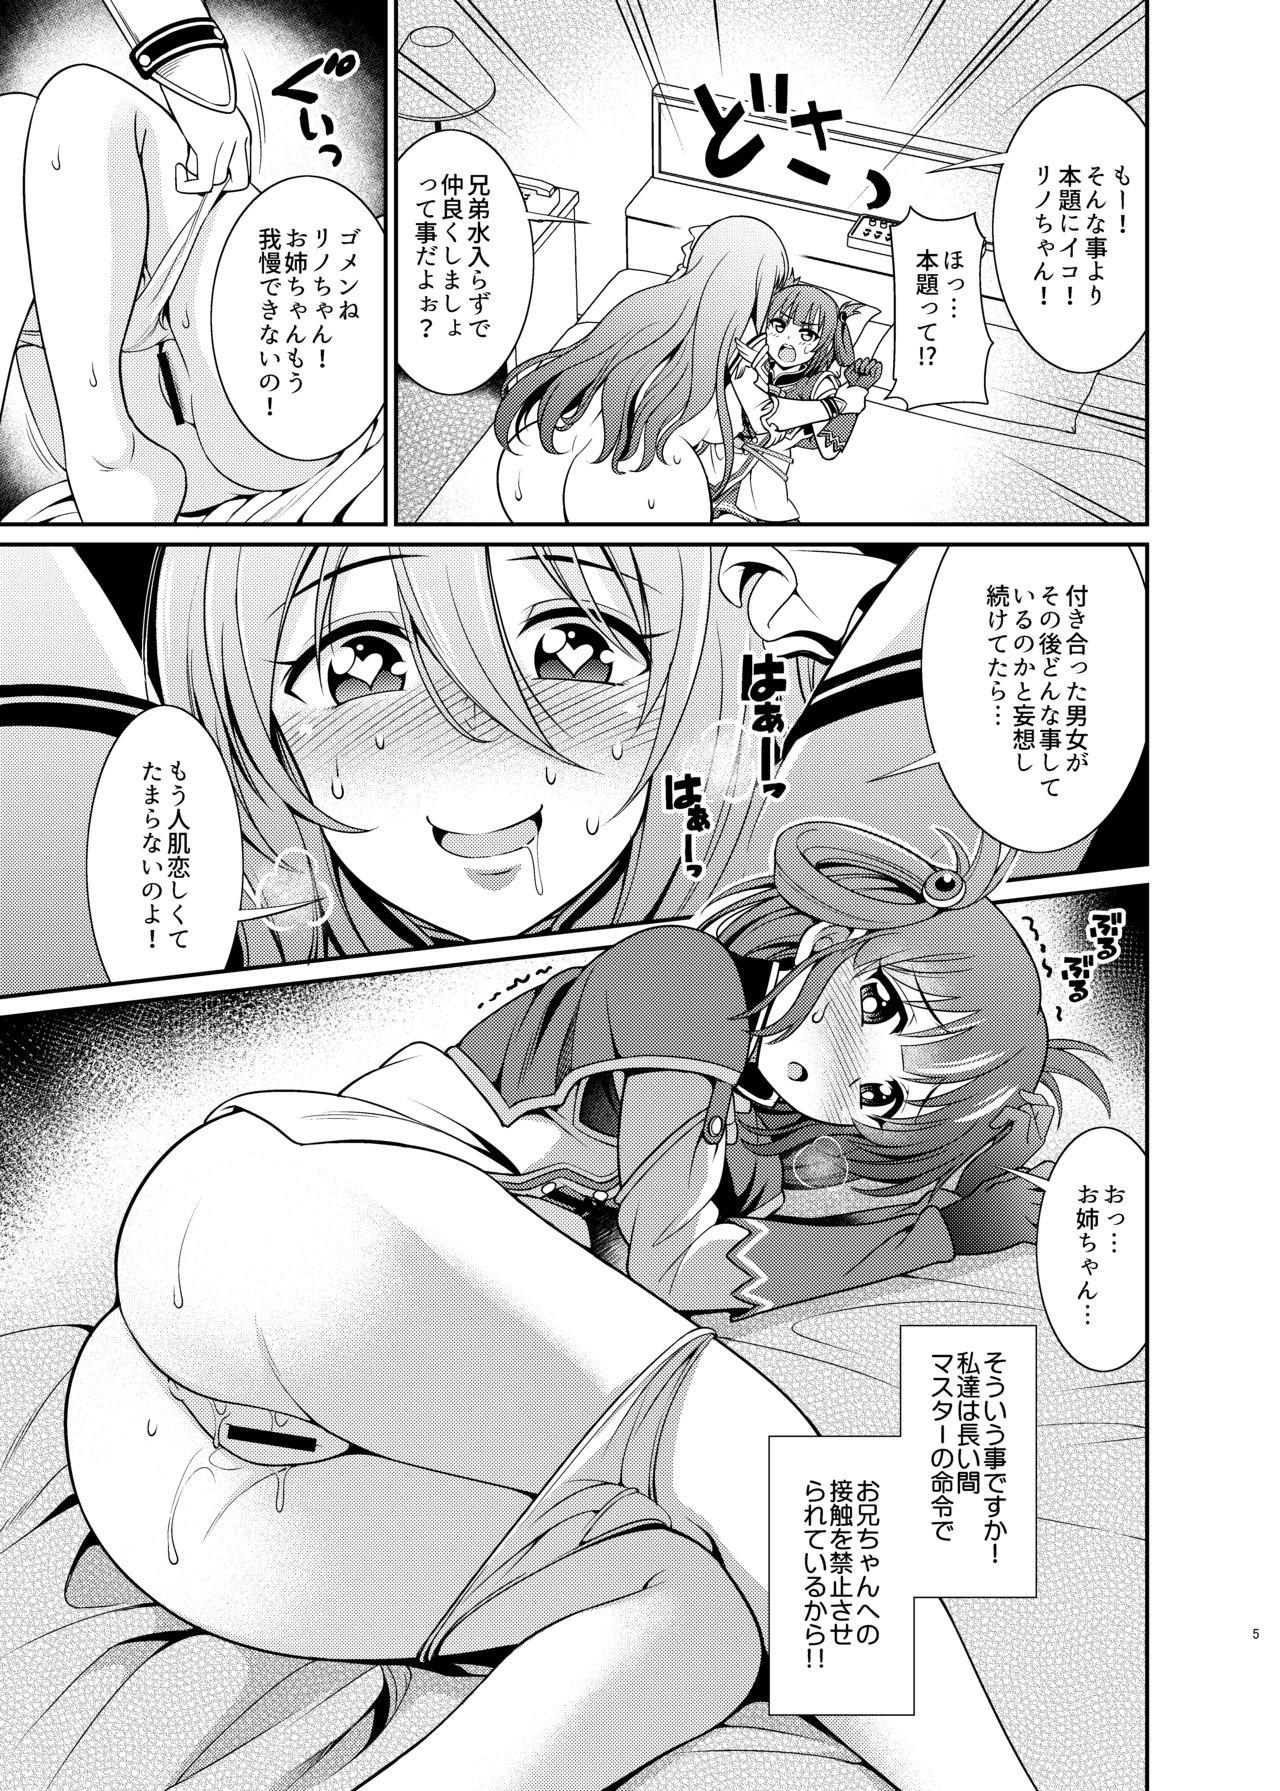 Girl On Girl Kinyoku Seikatsu nante Kiwameru kara... Ochinchin ga Haechaun desu yo! - Princess connect Vergon - Page 5